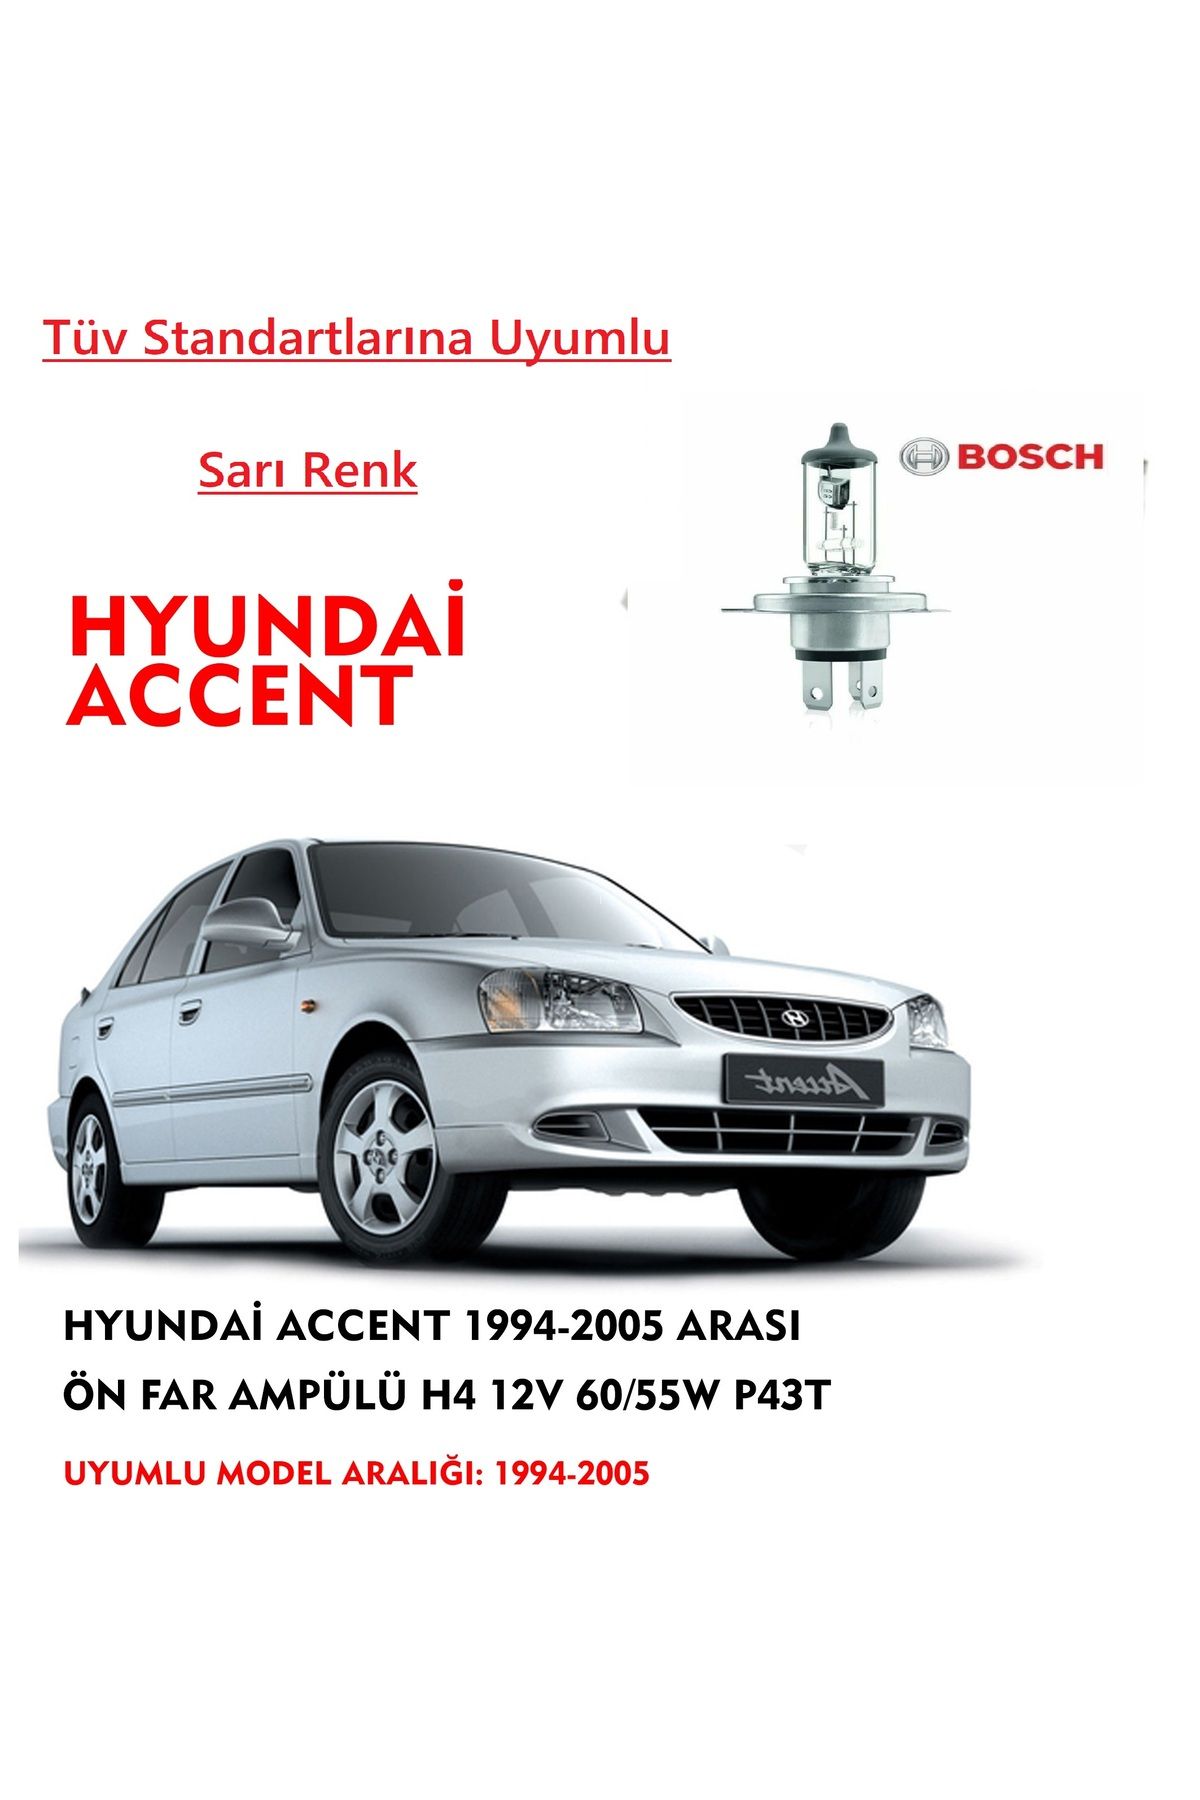 Bosch Hyundai Accent 1994-2005 Arası Ön Far Ampülü Sarı Renk 60/55w